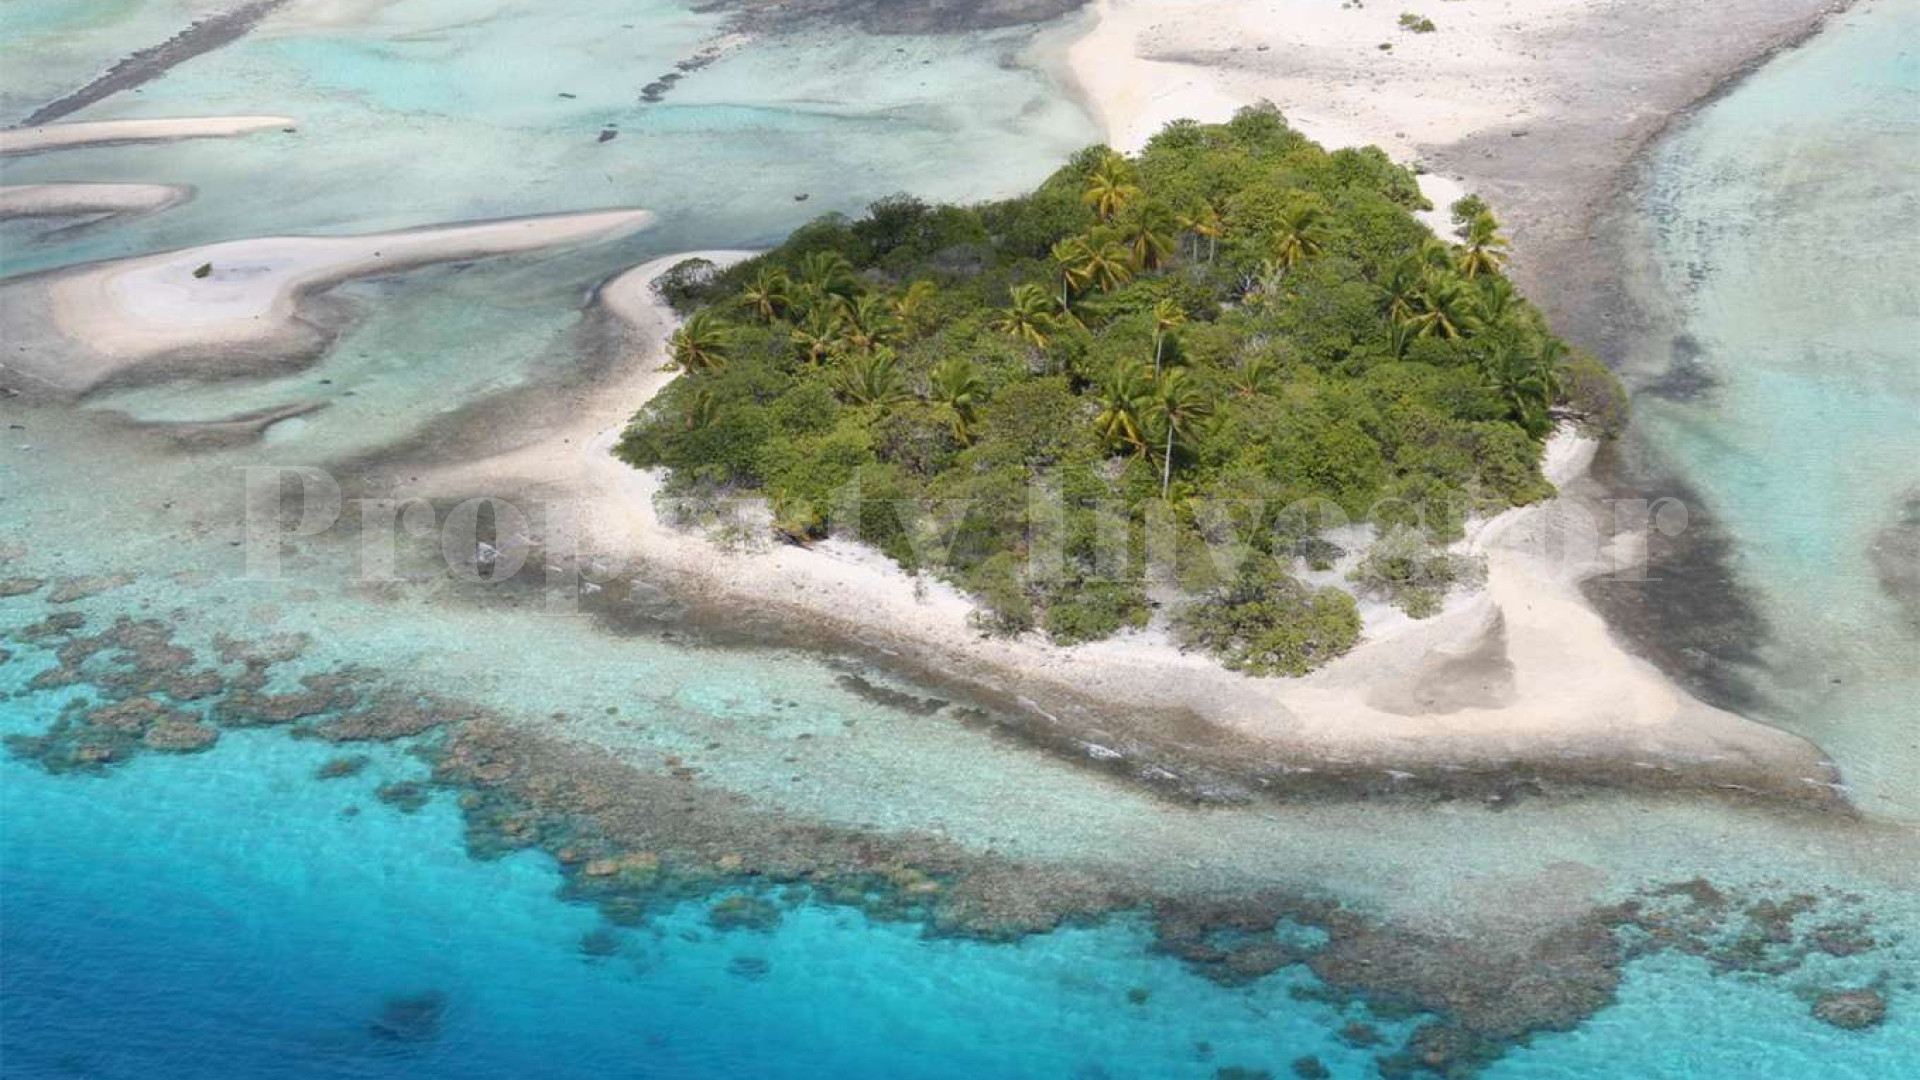 Продается частный атолл 900 га с фермой жемчуга и с взлетно-посадочной полосой во Французской Полинезии